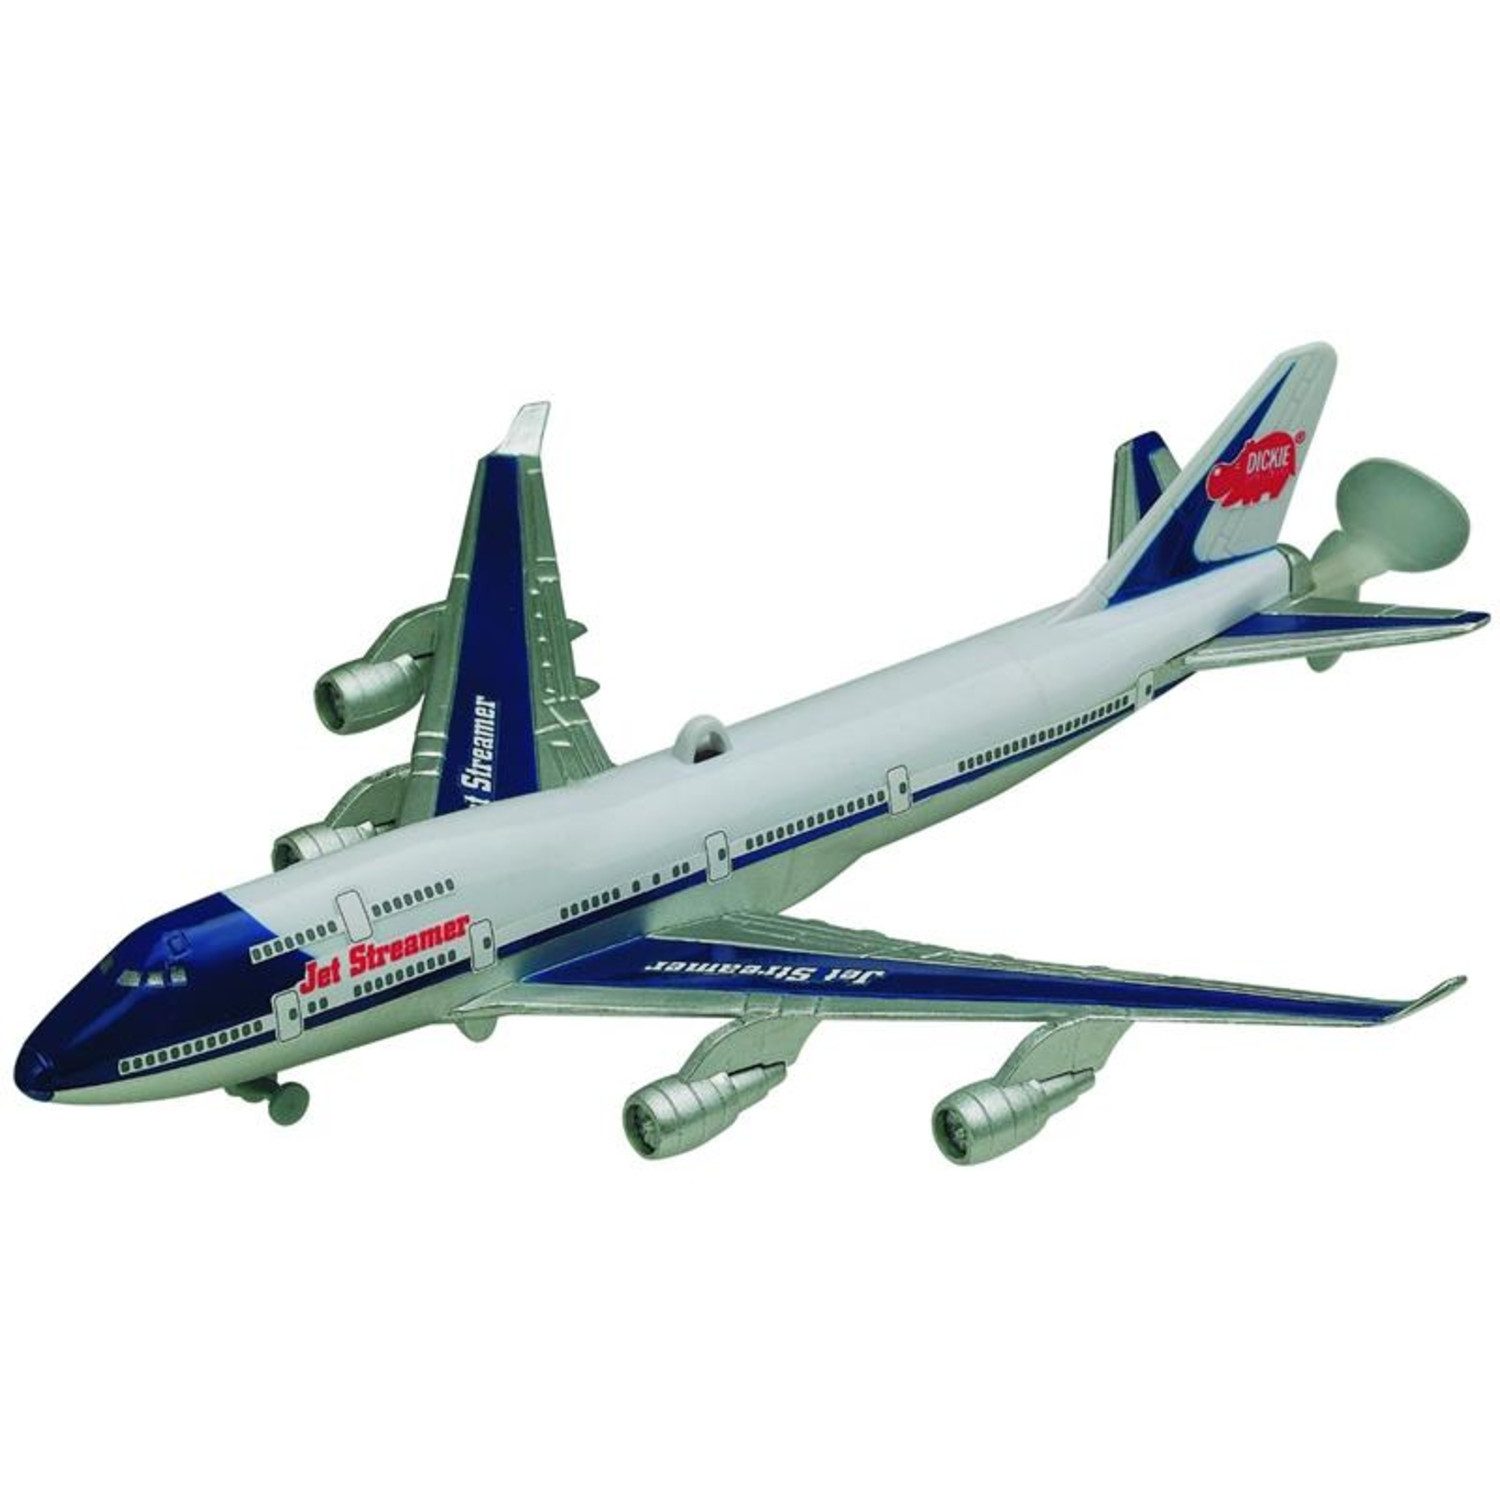 Dickie Toys Spielzeug-Flugzeug 203343004 Jet Streamer